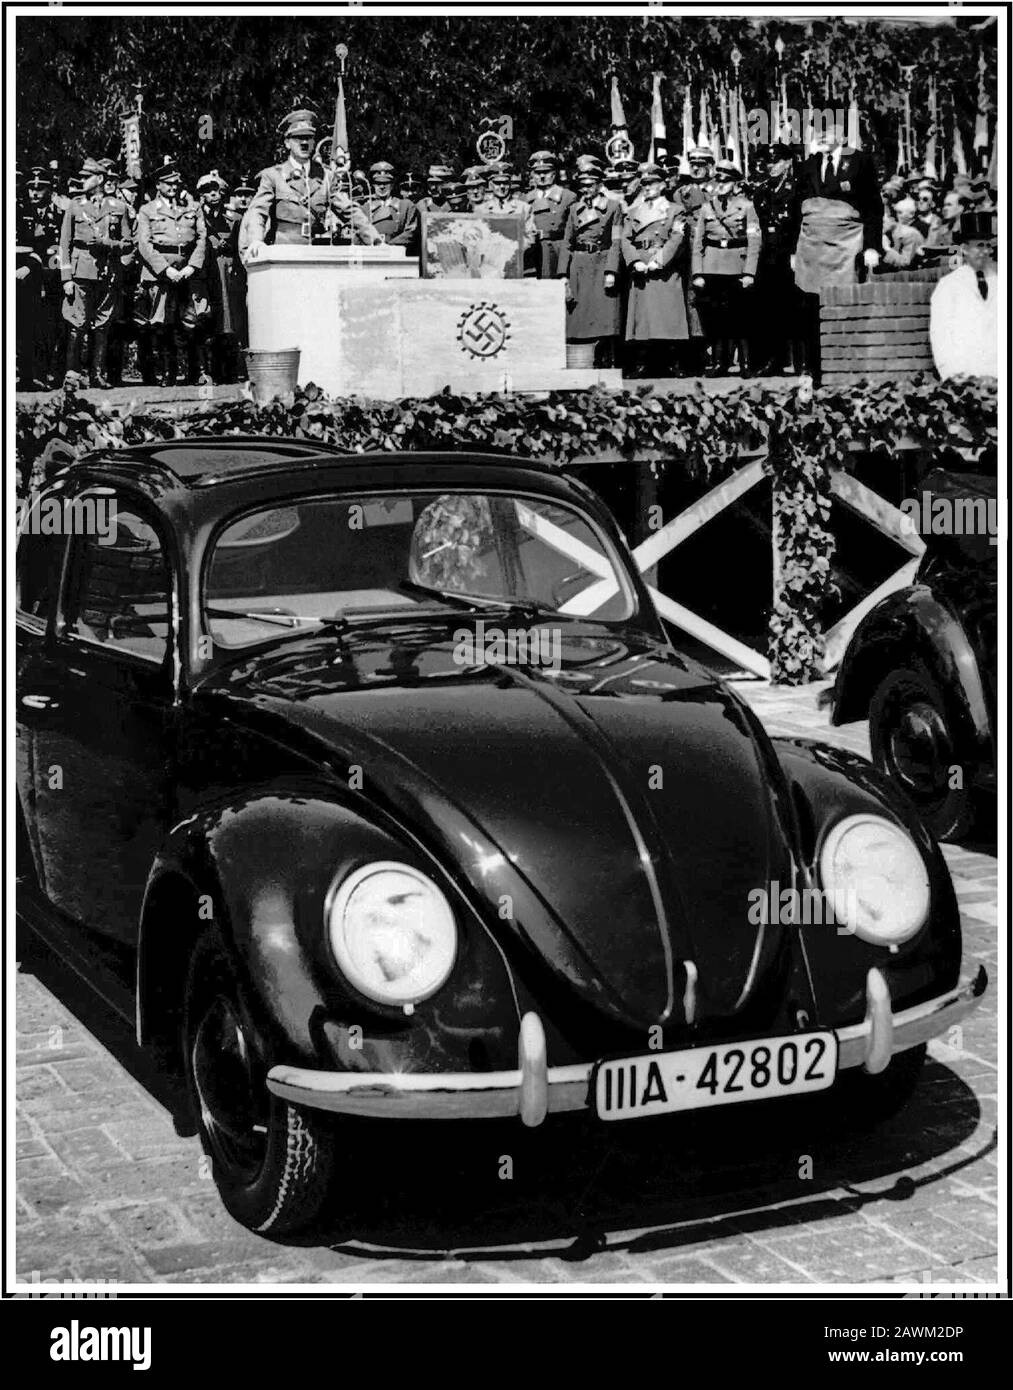 ADOLF HITLER parla negli anni '30 al lancio di KDF-Wagen VOLKSWAGEN. Hitler sta facendo un discorso dietro la pietra di fondazione scolpita nazista swastika al lancio della "People's car" KDF-Wagen VW Volkswagen Beetle vettura raffreddata ad aria, un acclamato e ispirato design dal genio automobilistico Dr Porsche, lanciato a Fallersleben Wolfsburg Germania maggio 1938 Foto Stock